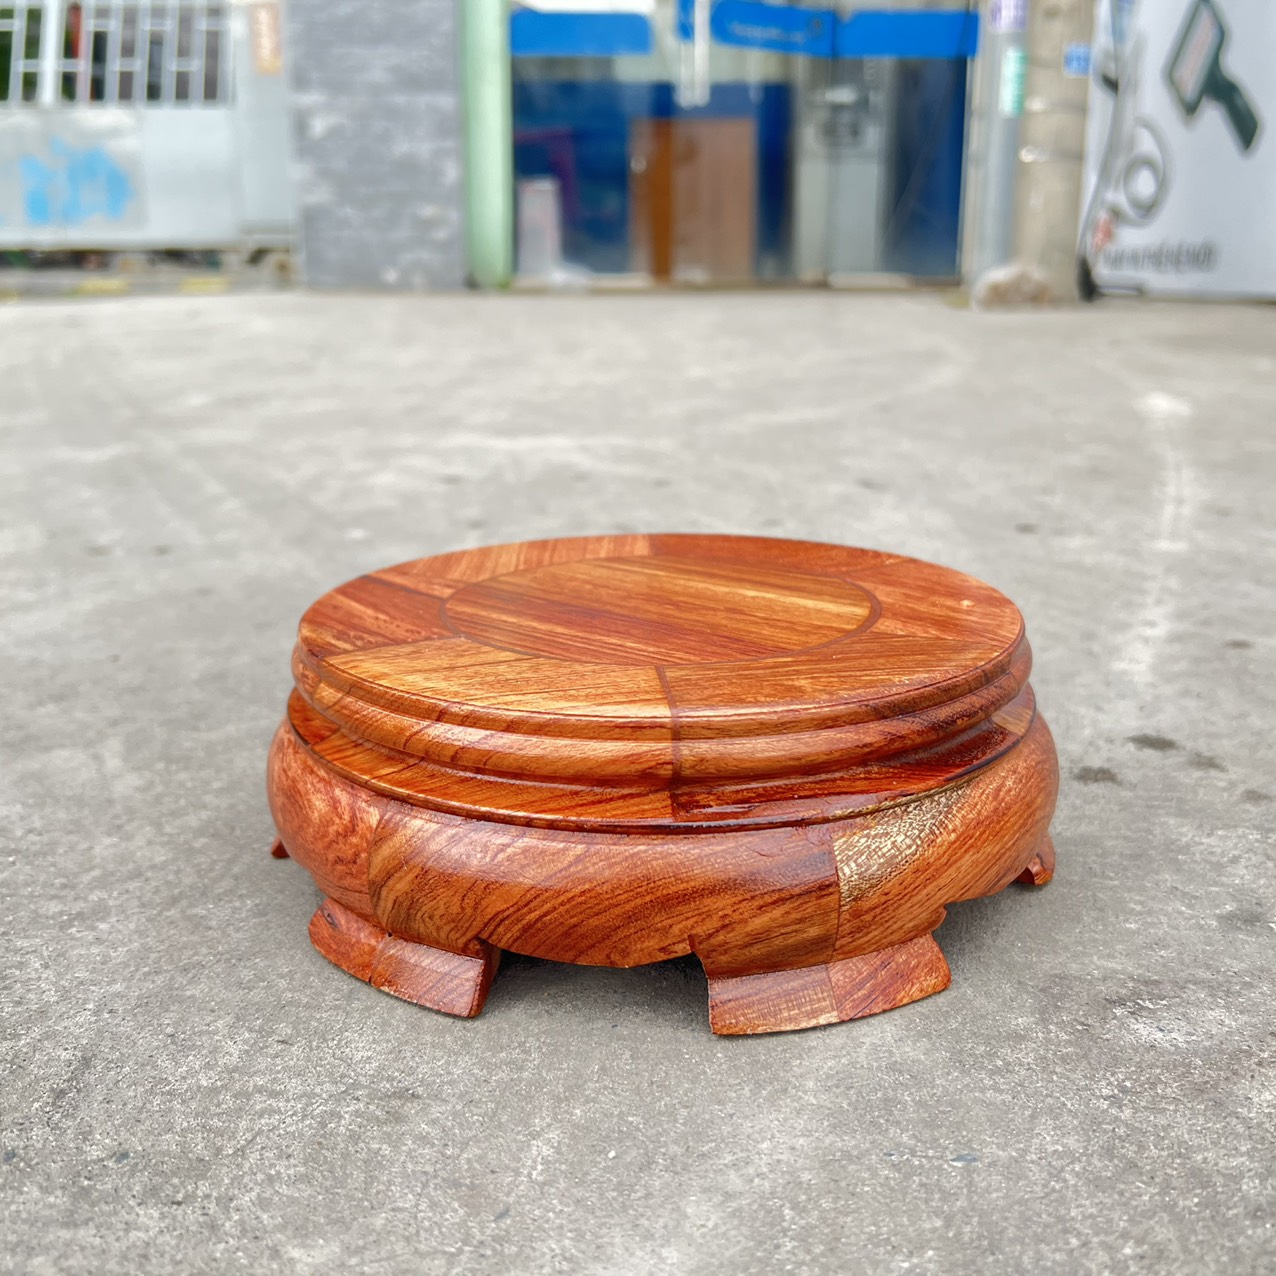 Đôn gỗ hương tròn kê tượng chắc chắn bền bỉ đường kính 10cm